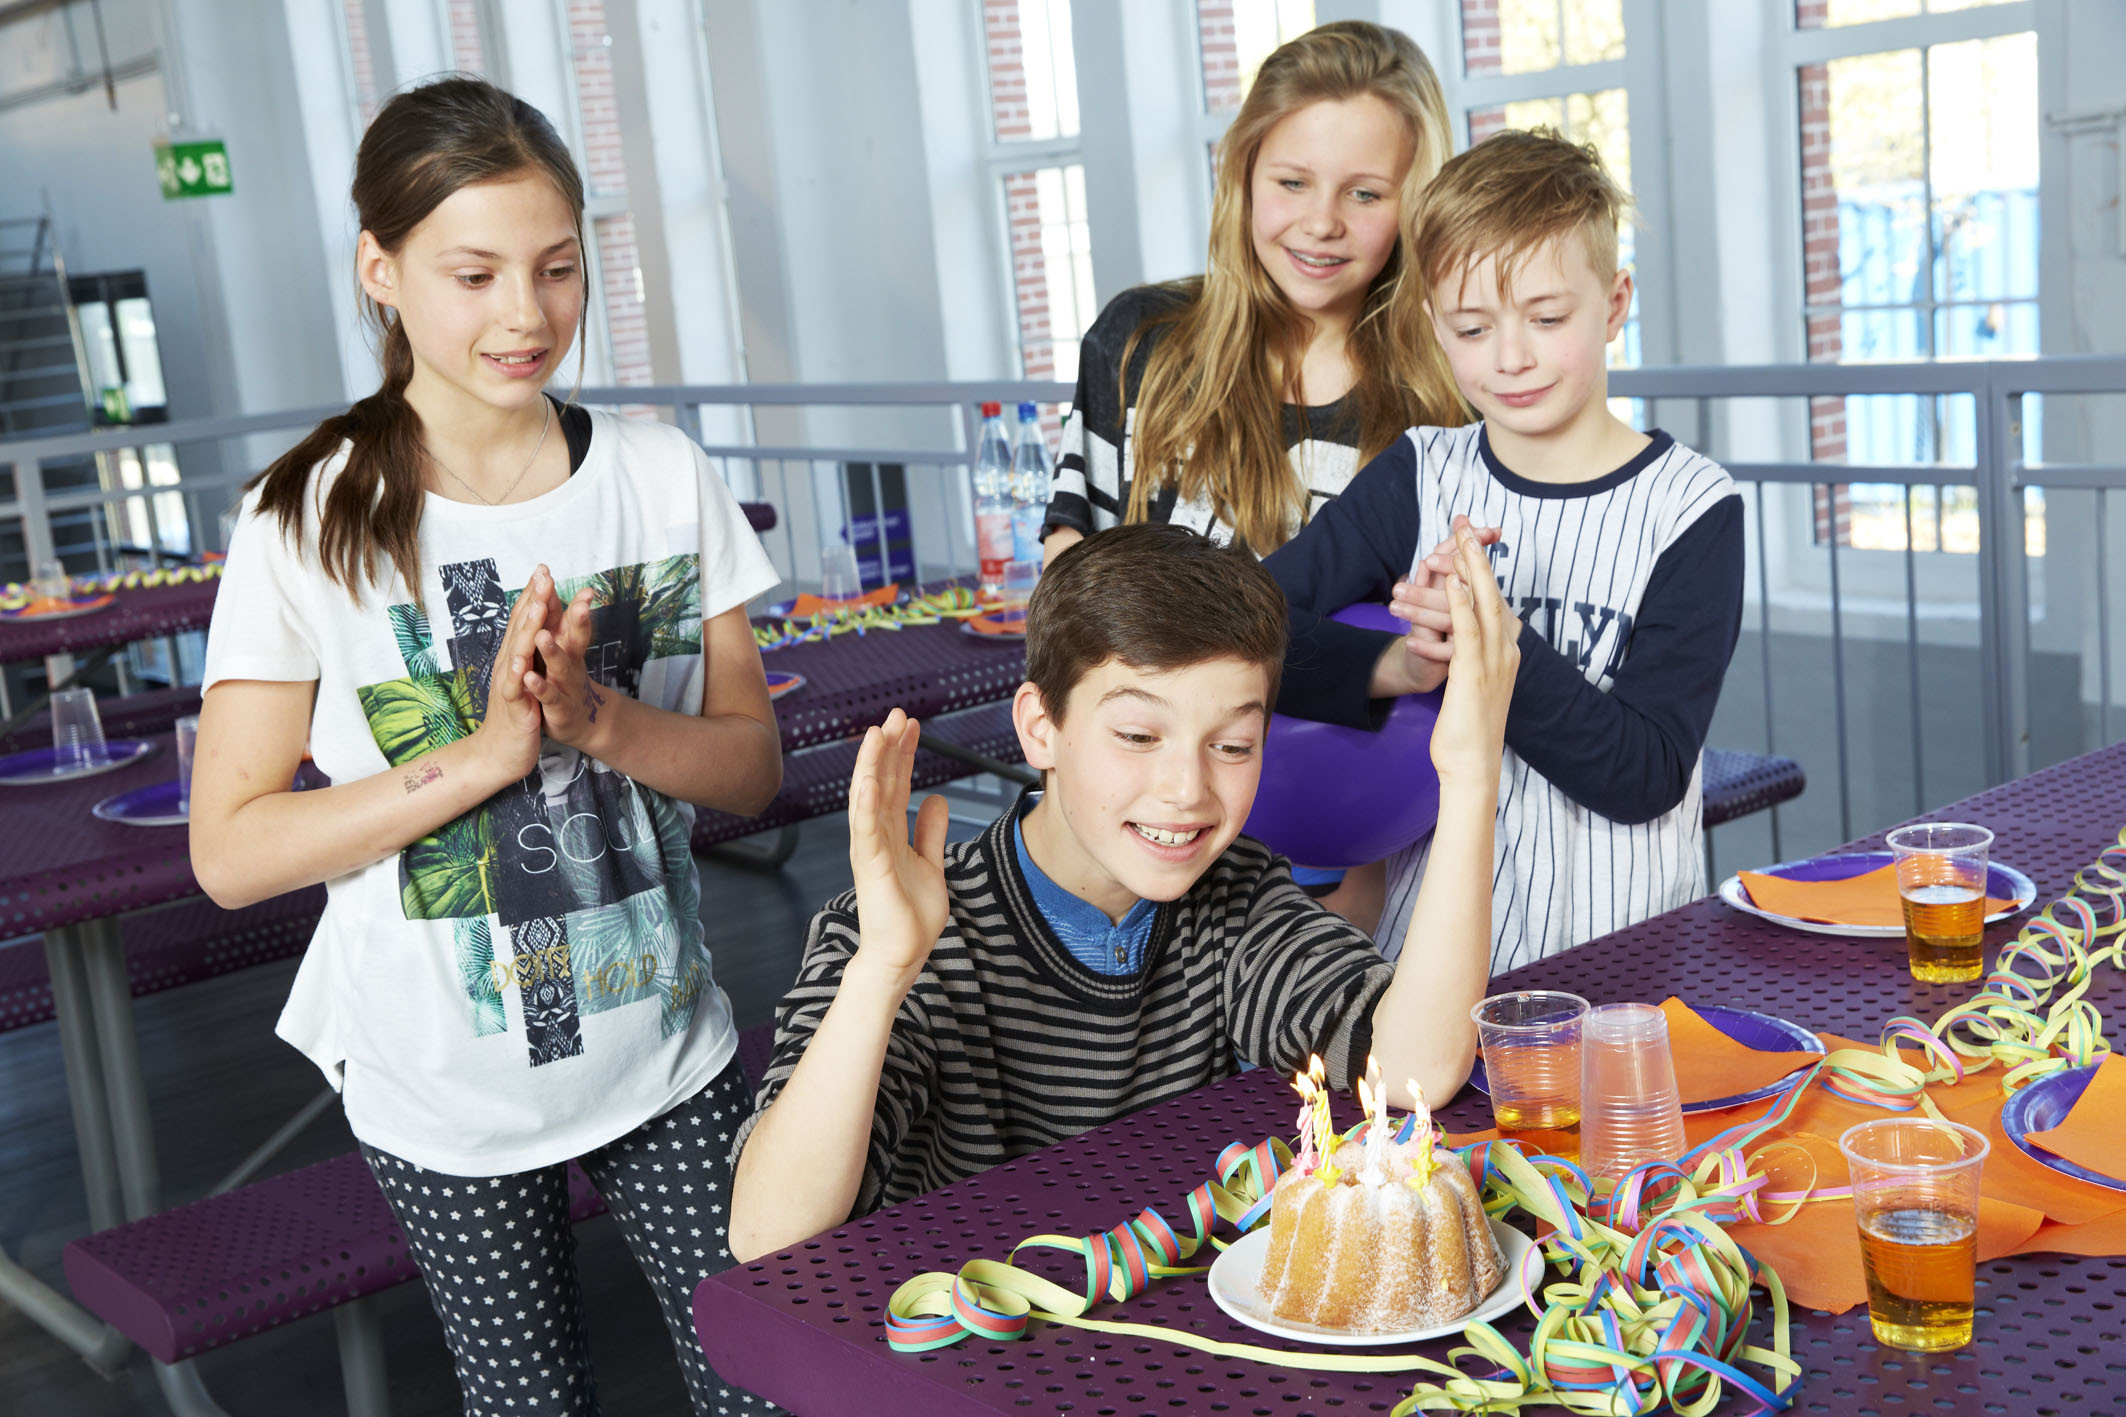 Kindergeburtstag In Leipzig - Hier Geht Die Party Ab ganzes Kindergeburtstag Feiern Für 12 Jährige